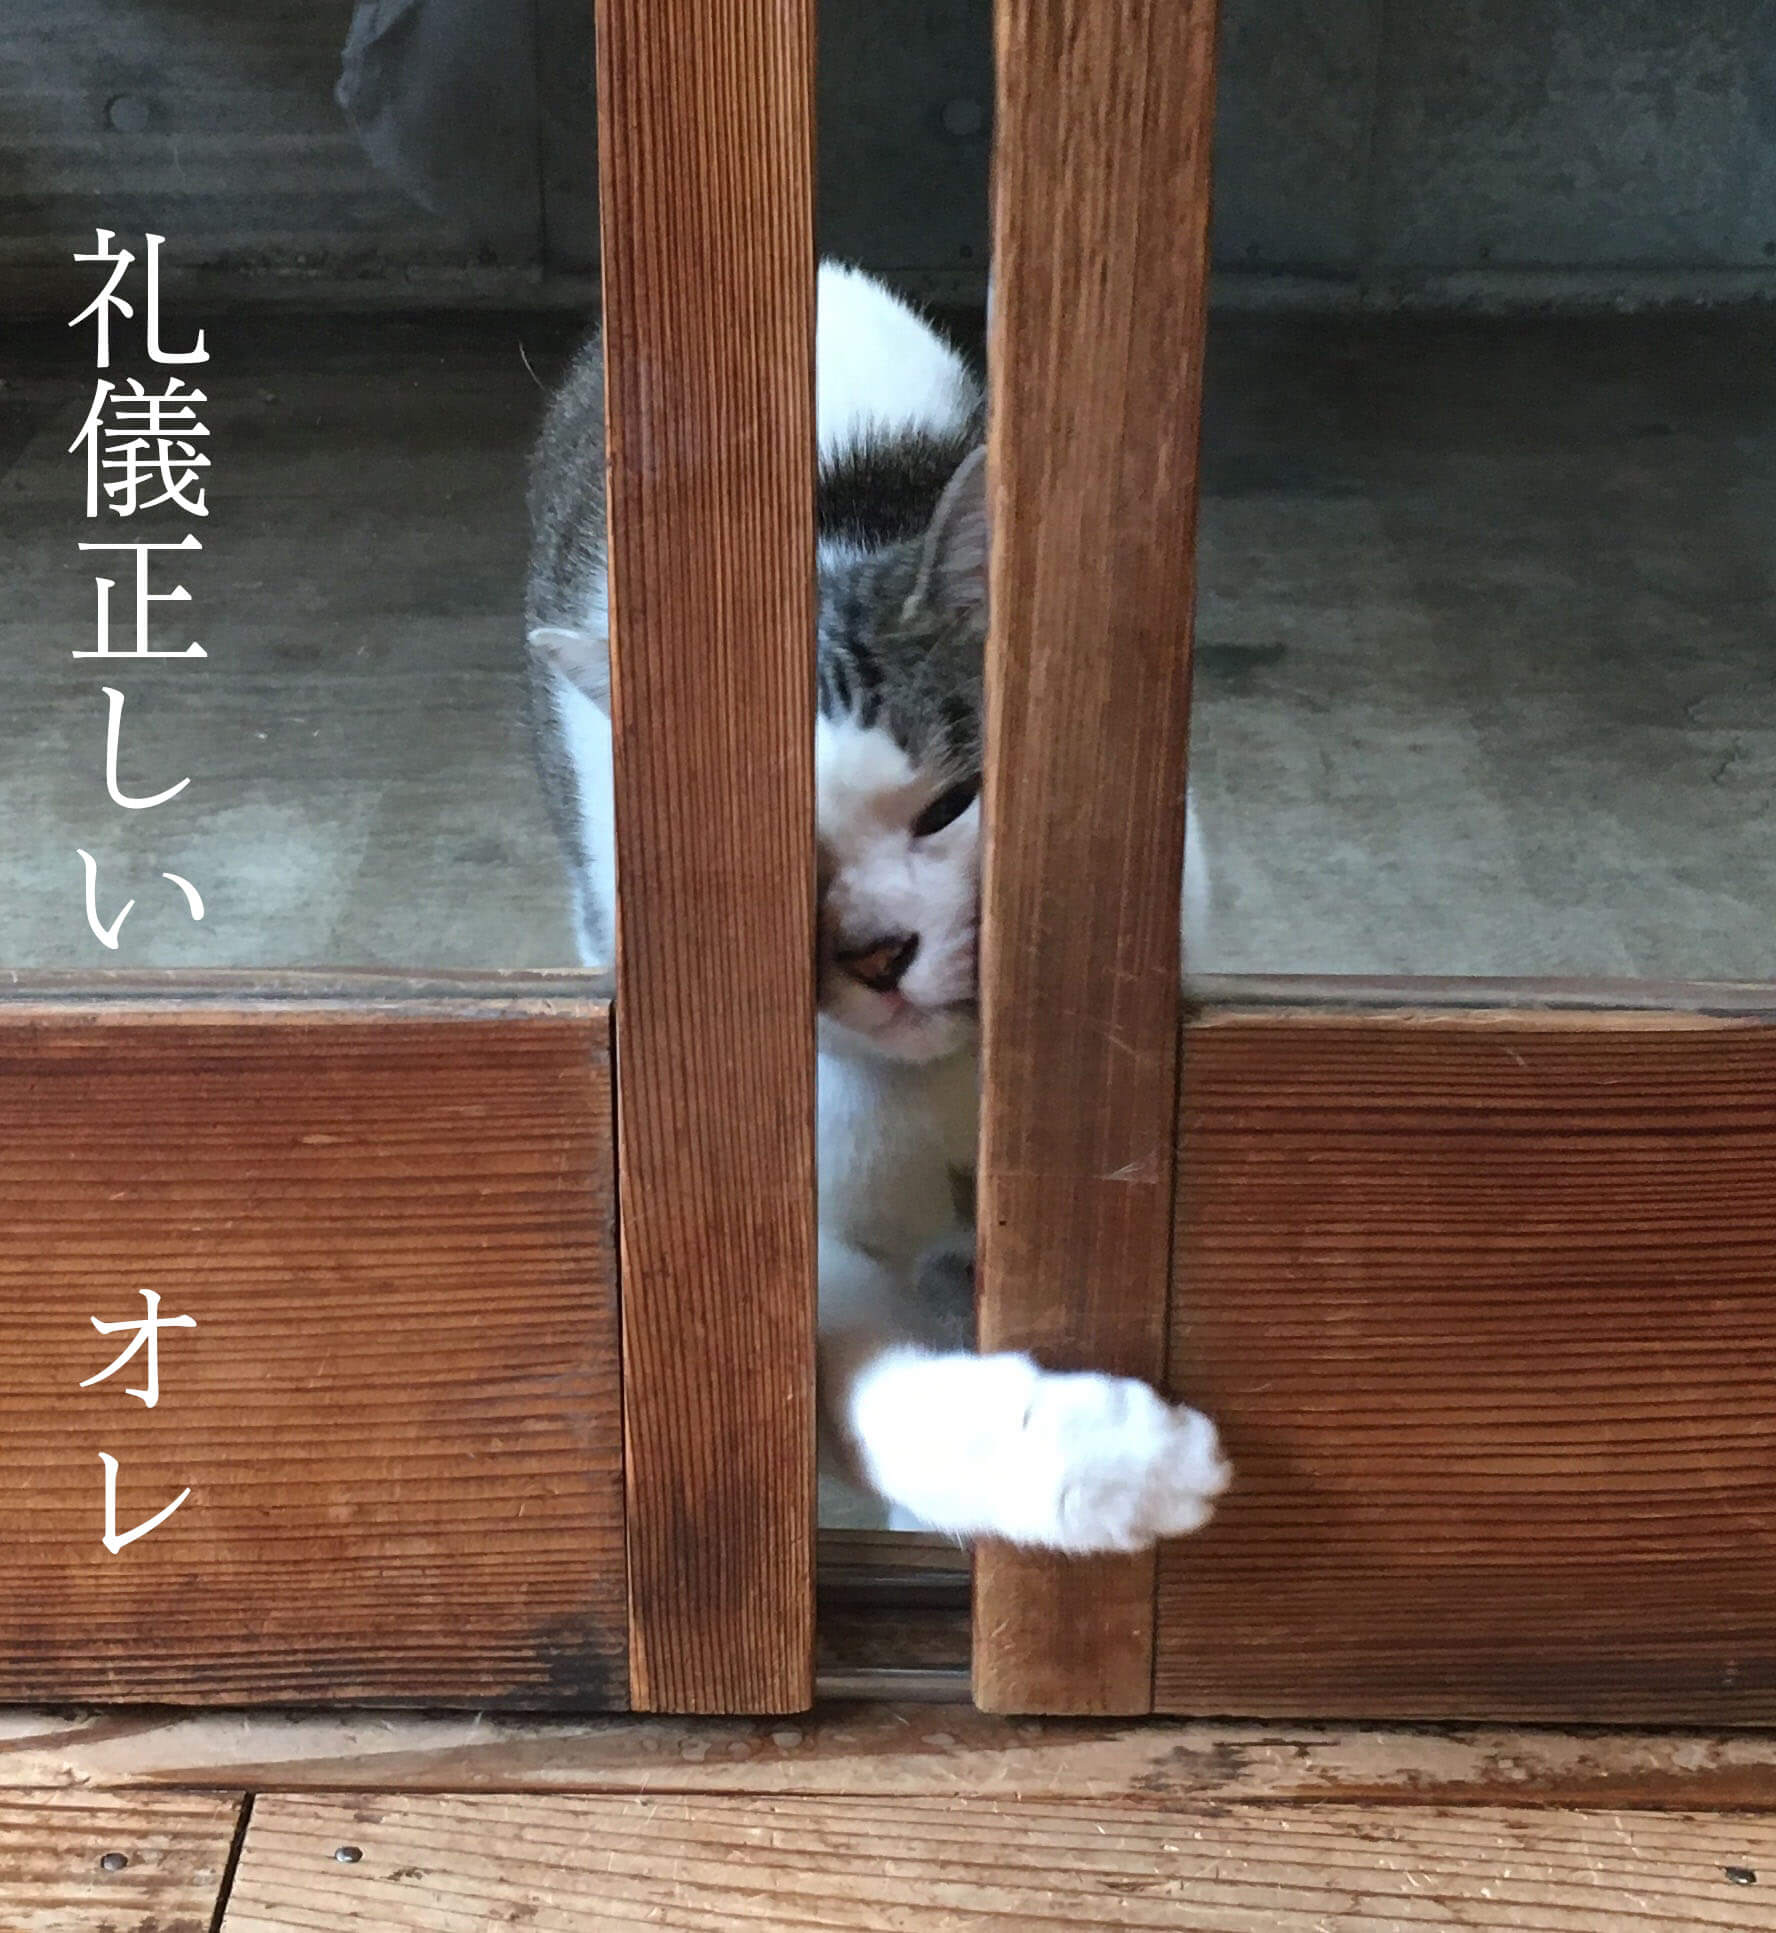 戸の隙間に手を入れて、少し戸を開いて、静かに入室するのが日本ネコ